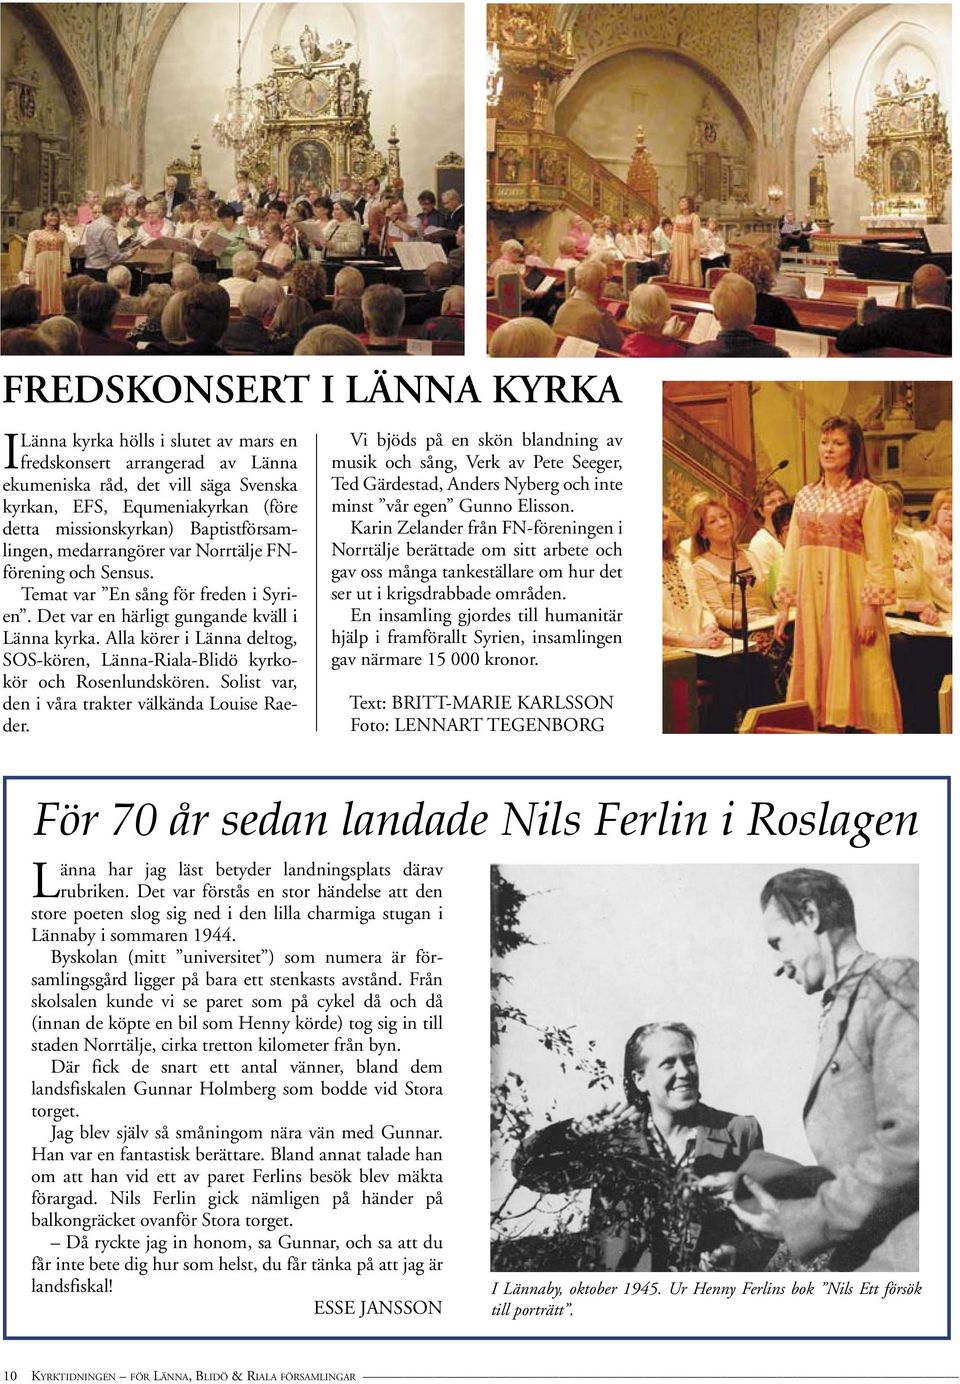 Alla körer i Länna deltog, SOS-kören, Länna-Riala-Blidö kyrkokör och Rosenlundskören. Solist var, den i våra trakter välkända Louise Raeder.